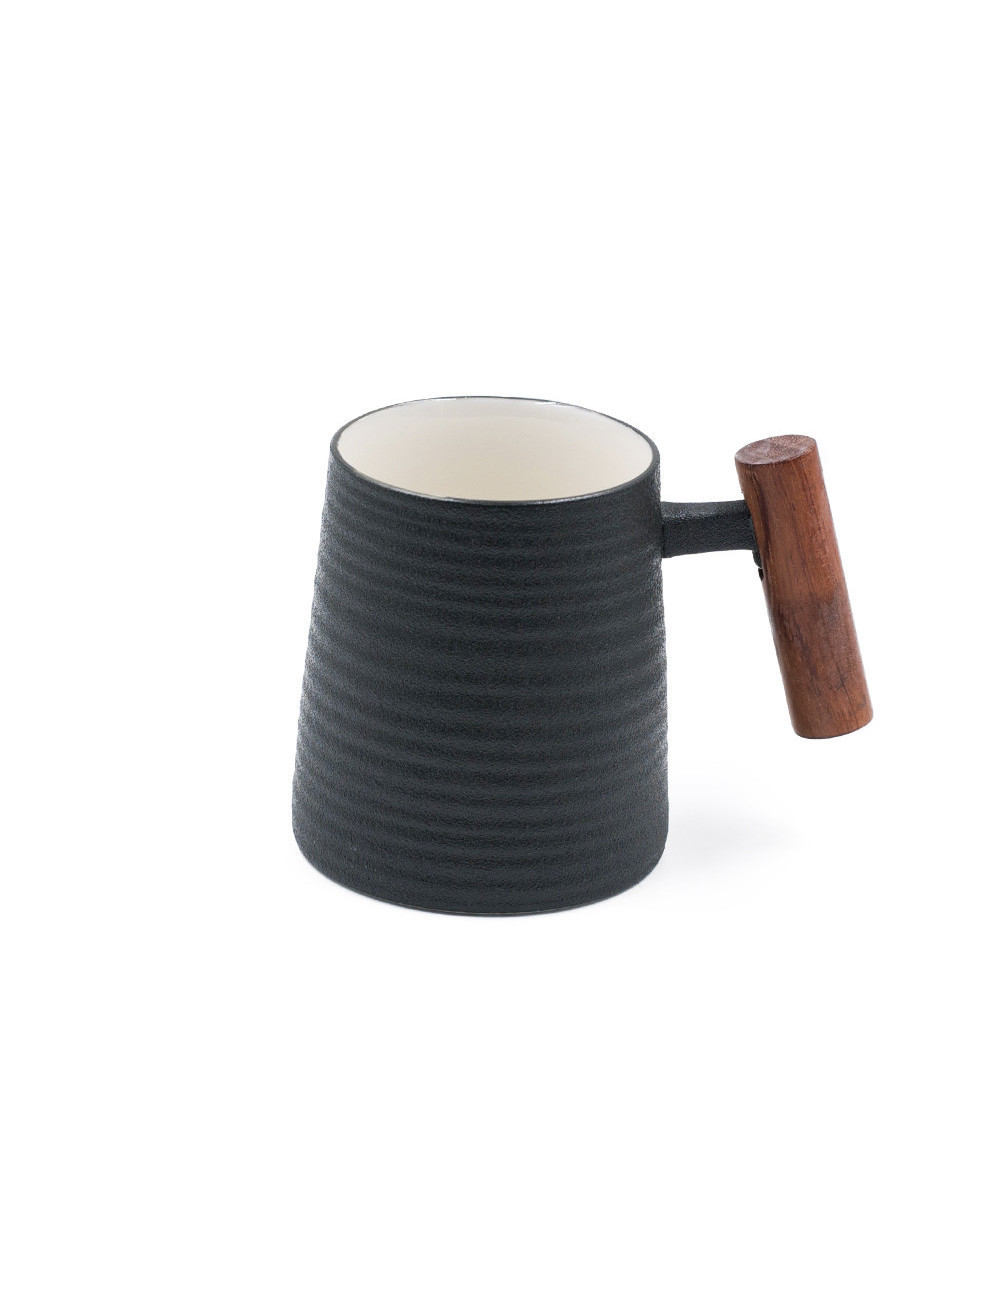 Mug stile anni '70 Old Style in porcellana nera effetto ghisa - La Pianta del Tè shop on line